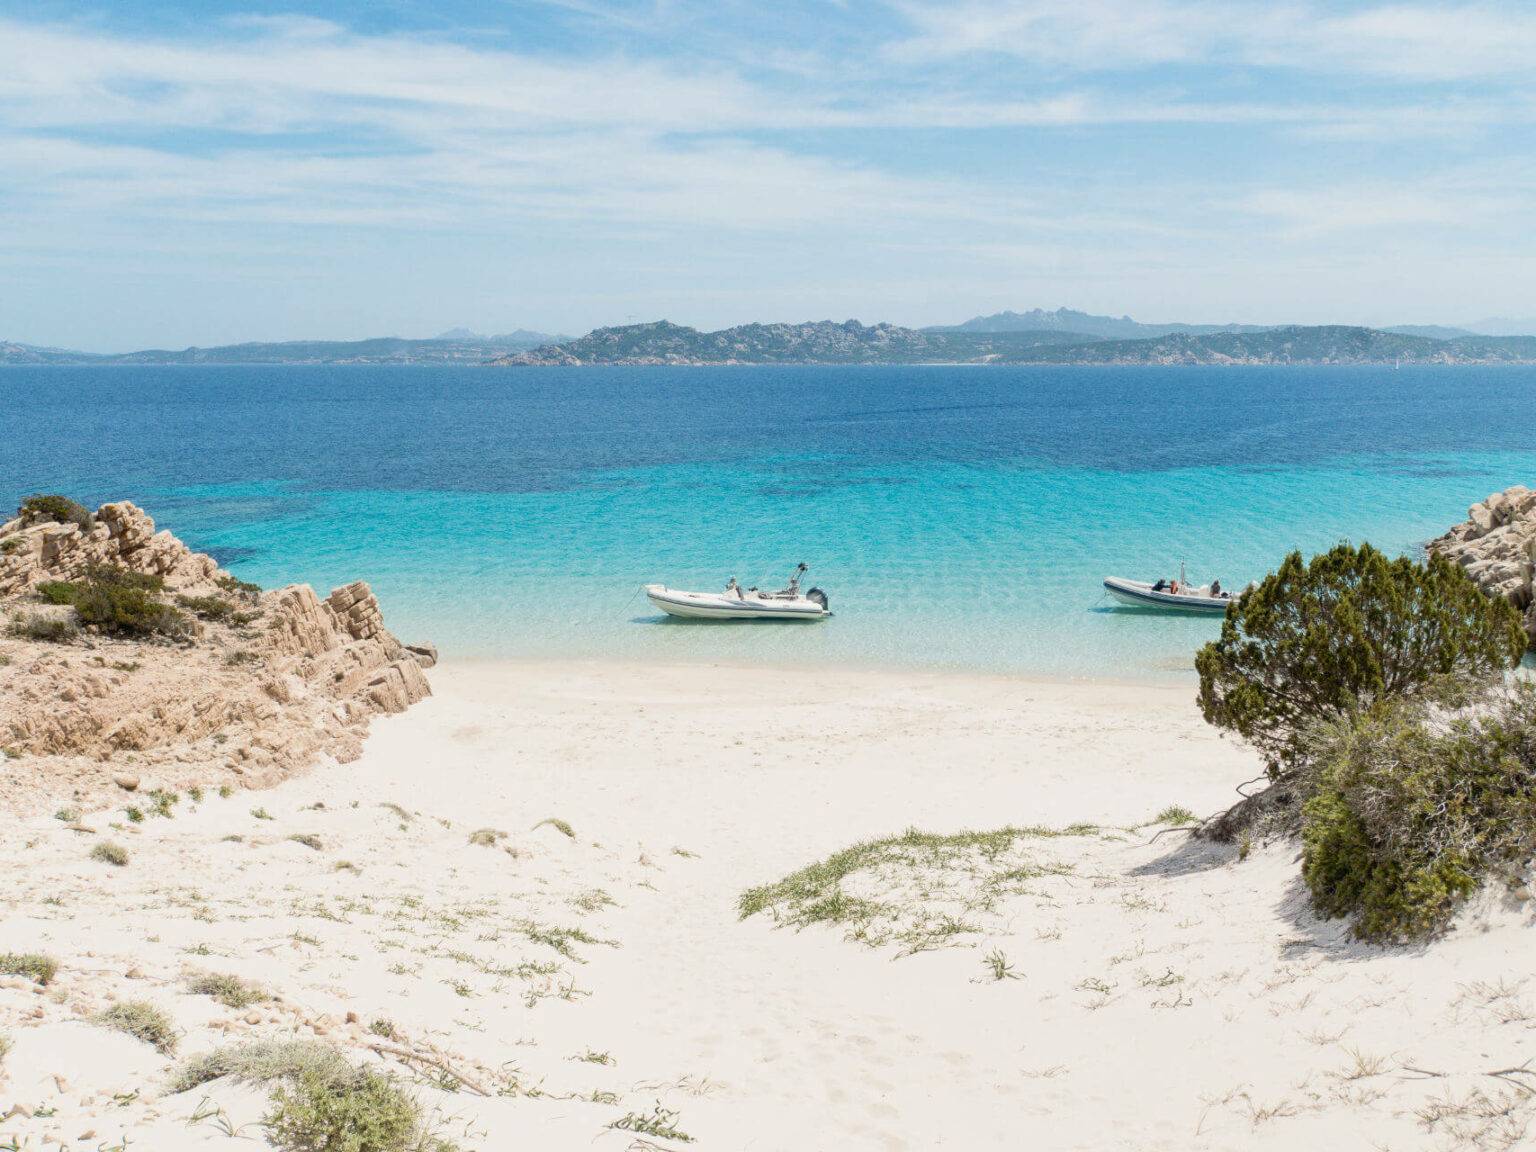 Einige Boote schwimmen auf dem klaren Wasser im Norden von Sardinien.